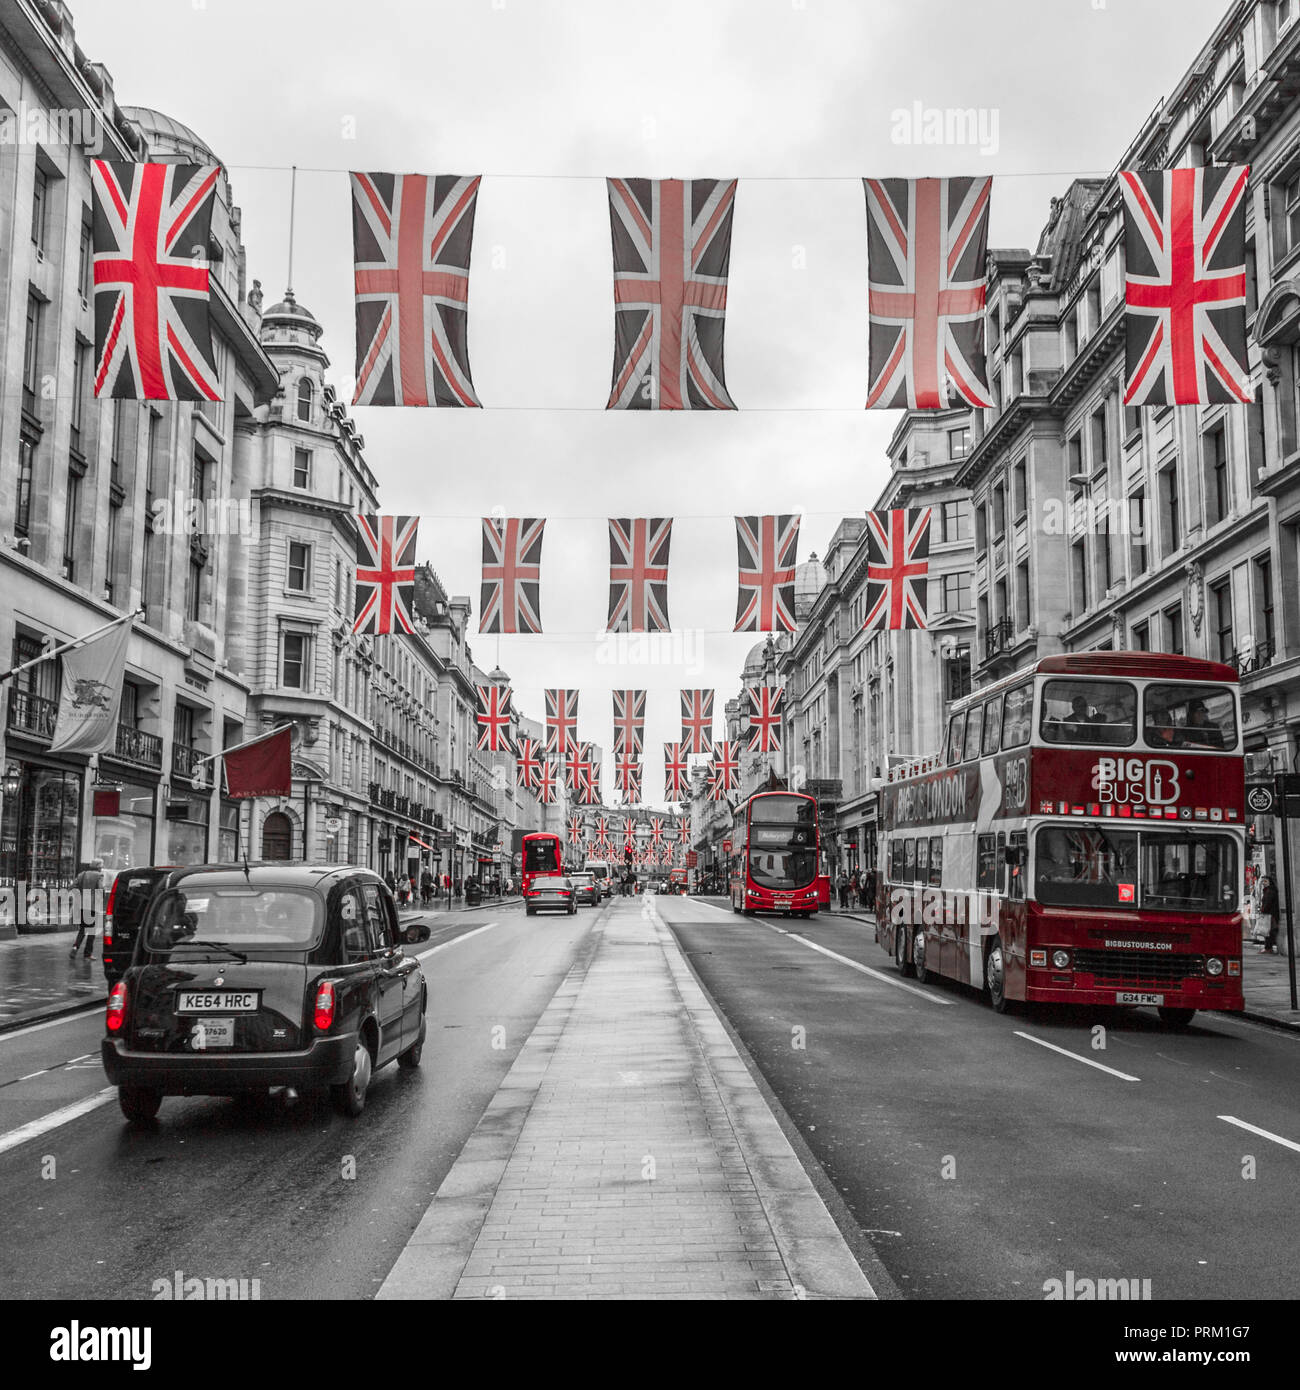 Regent Street, Londres avec Union Jack drapeaux et des taxis Anglais Banque D'Images